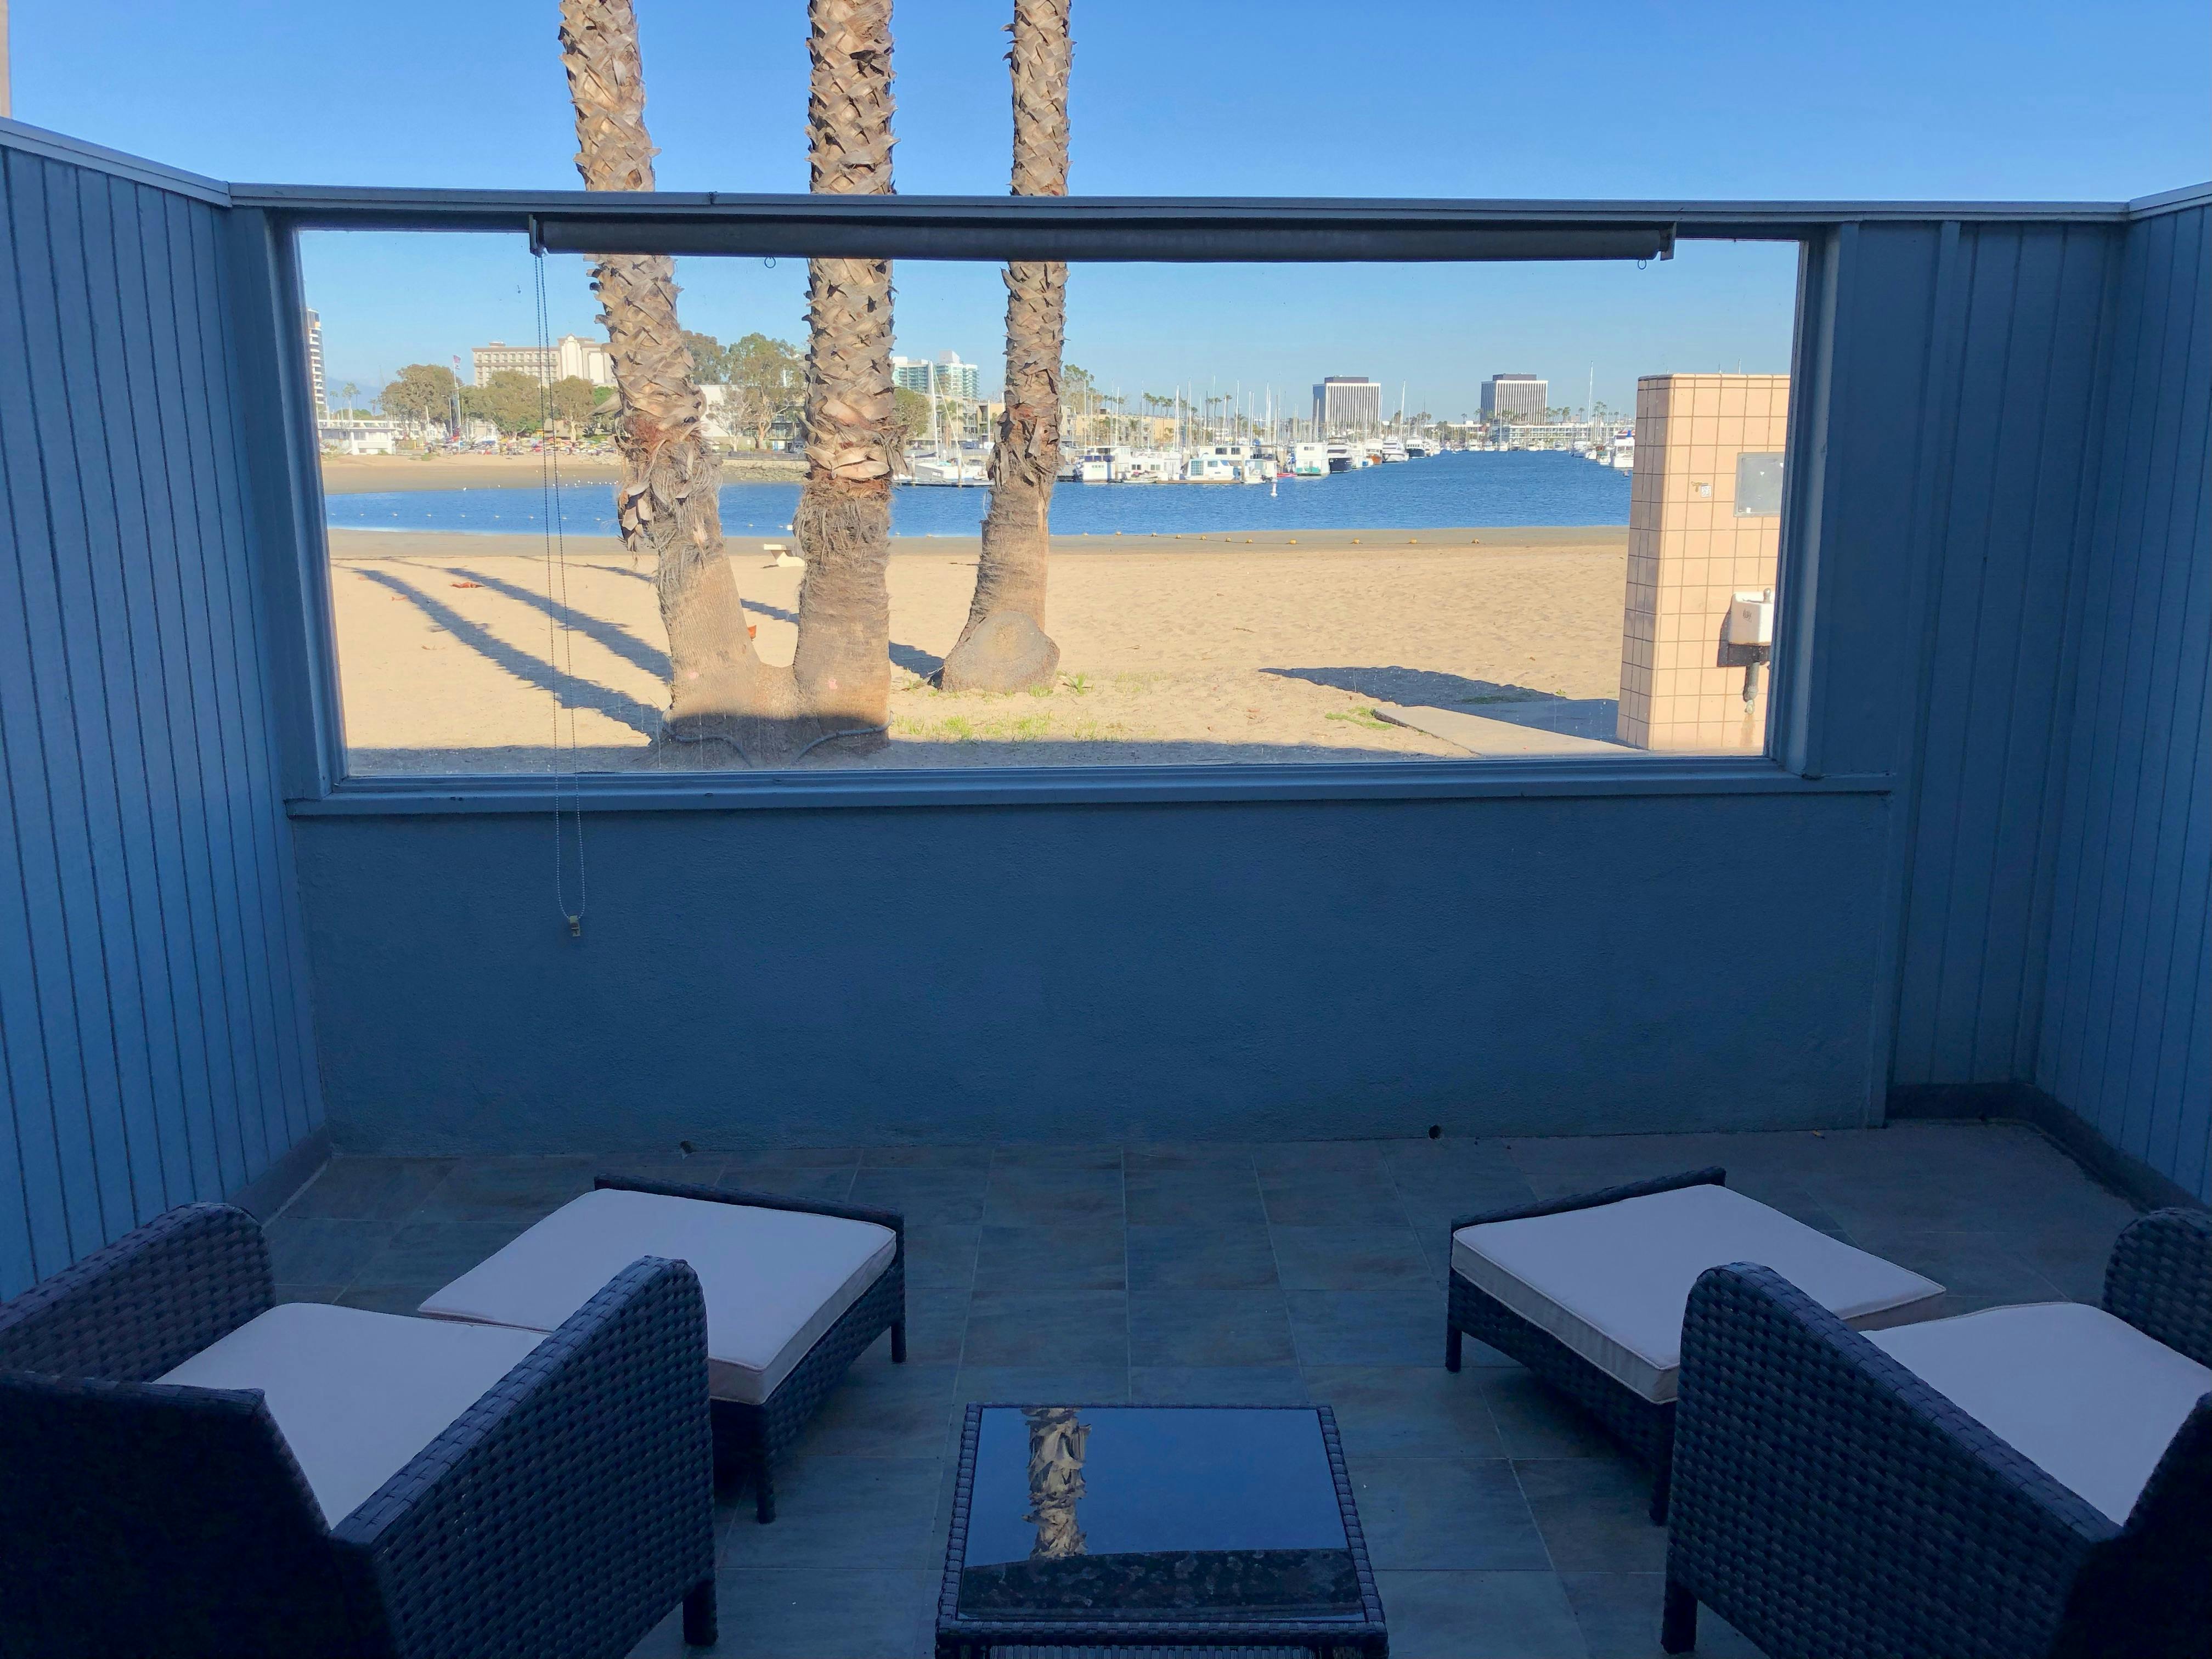 Beachfront Patio Room View